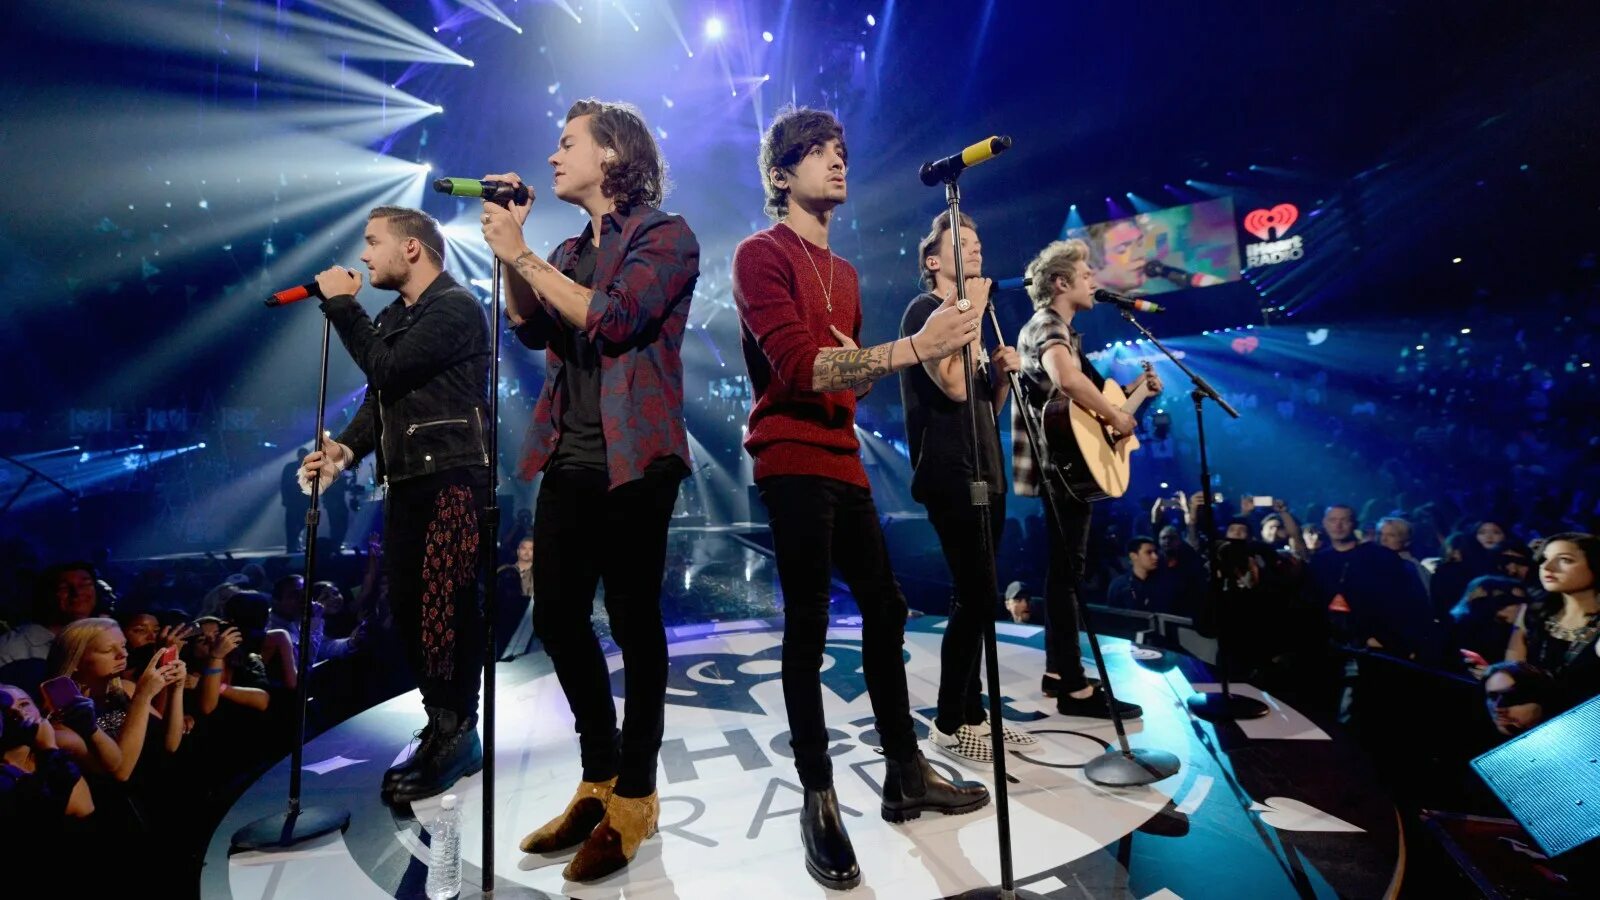 Много людей поют. One Direction на сцене. One Direction поют на сцене. Человек поет на сцене. Много людей на сцене поют.